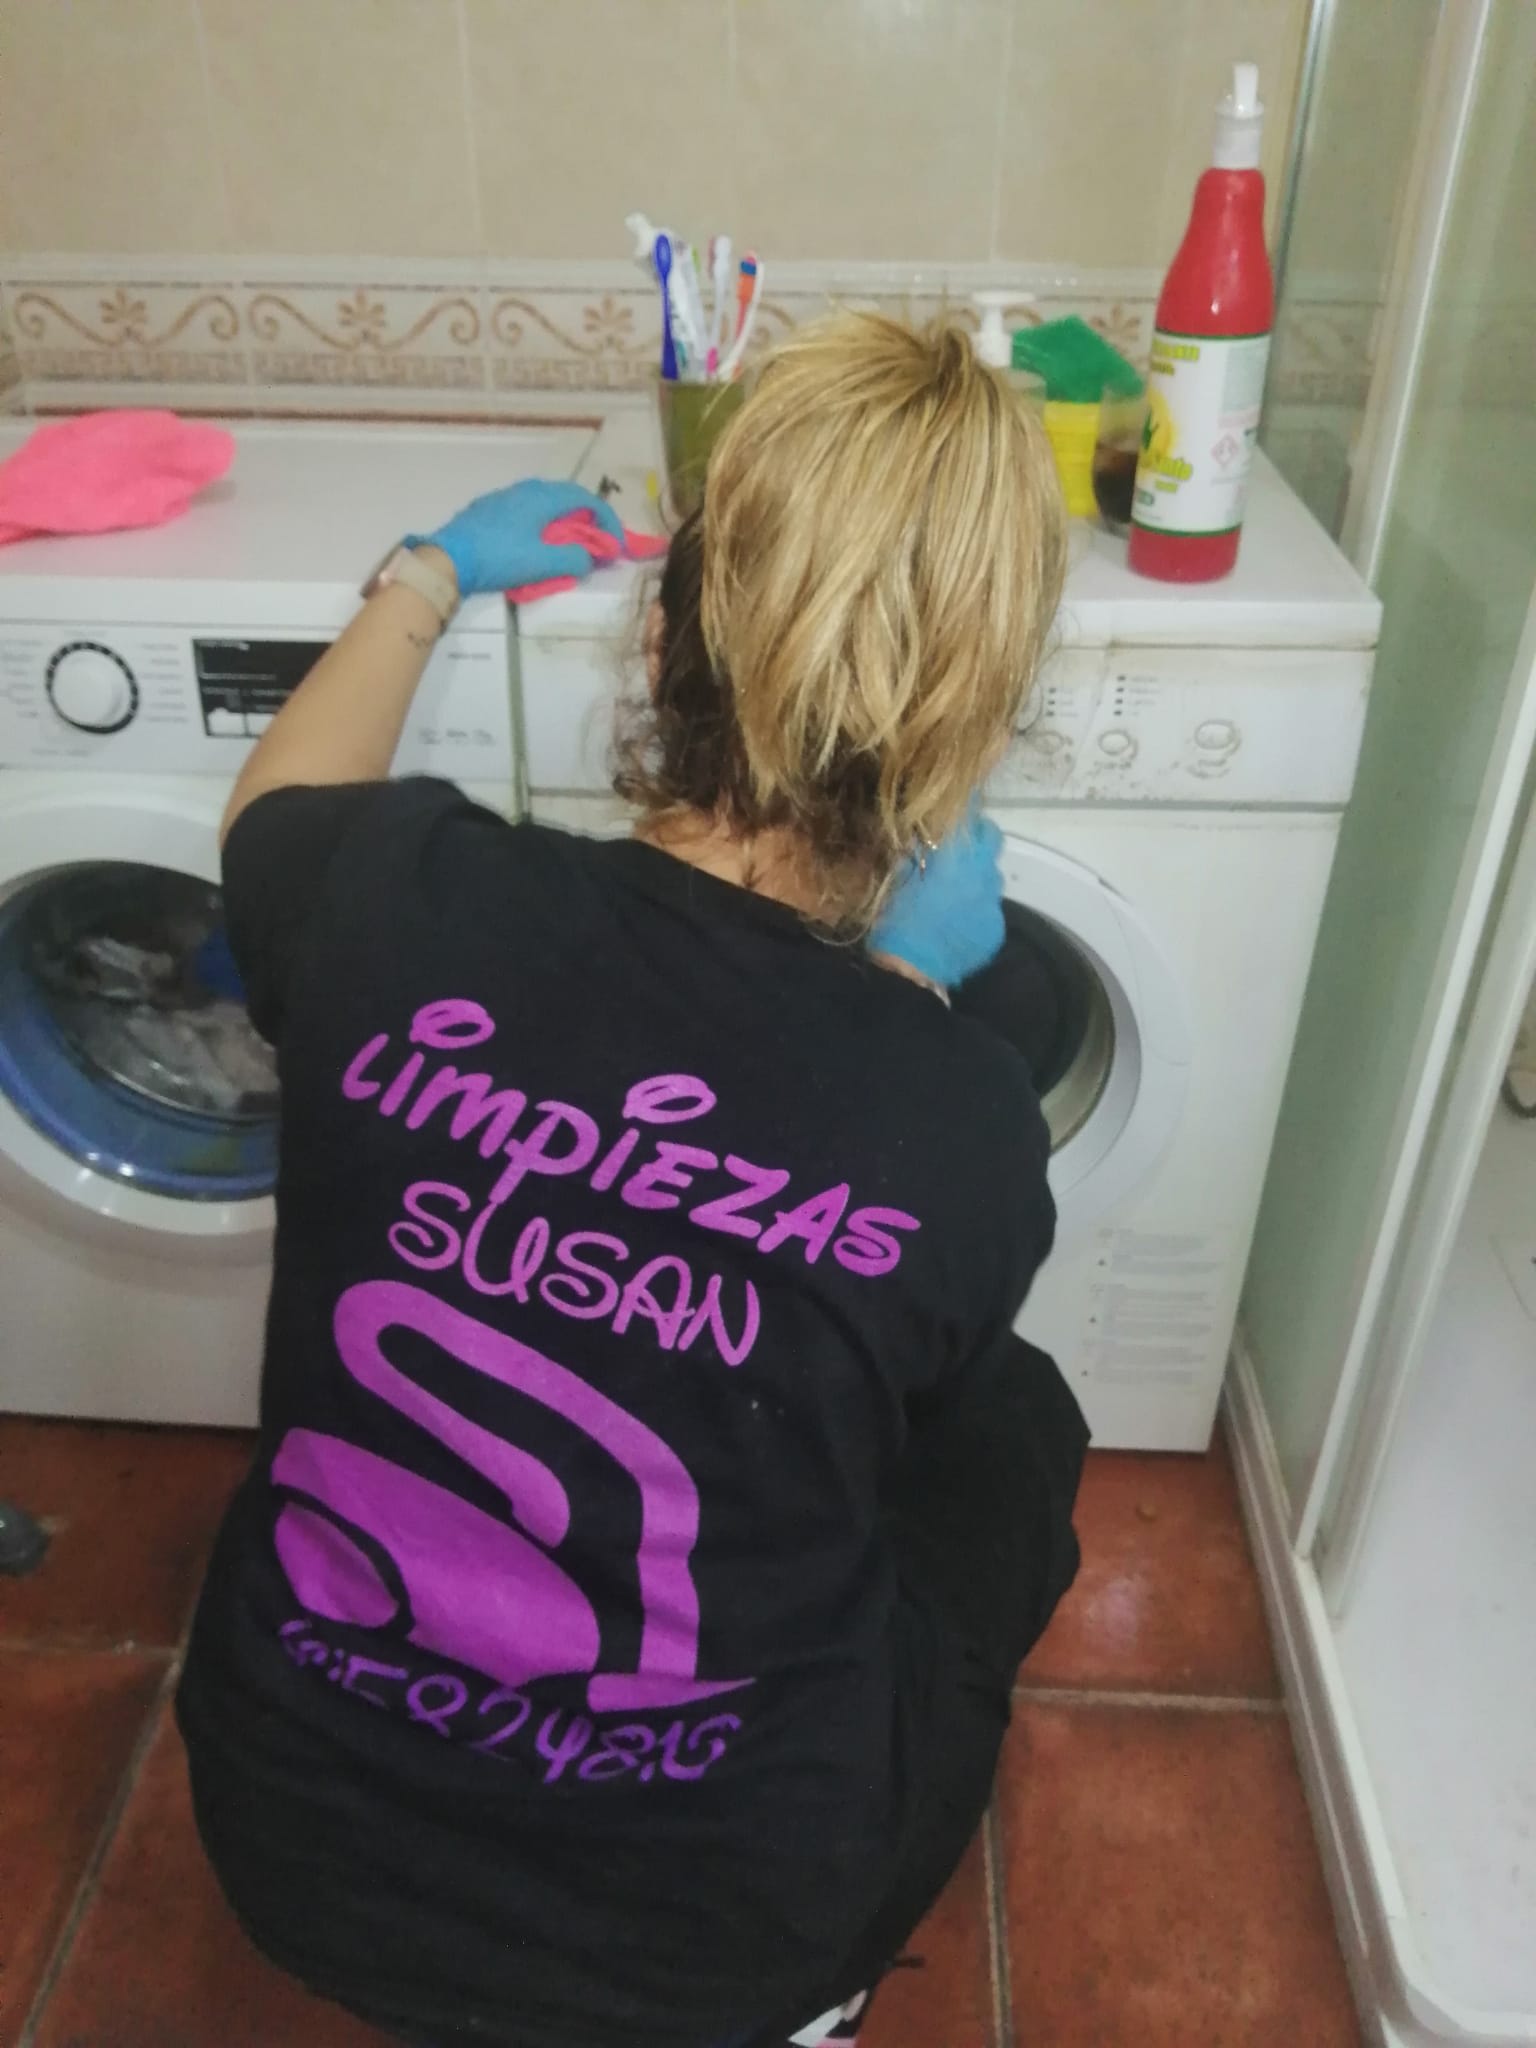 Limpieza Susan